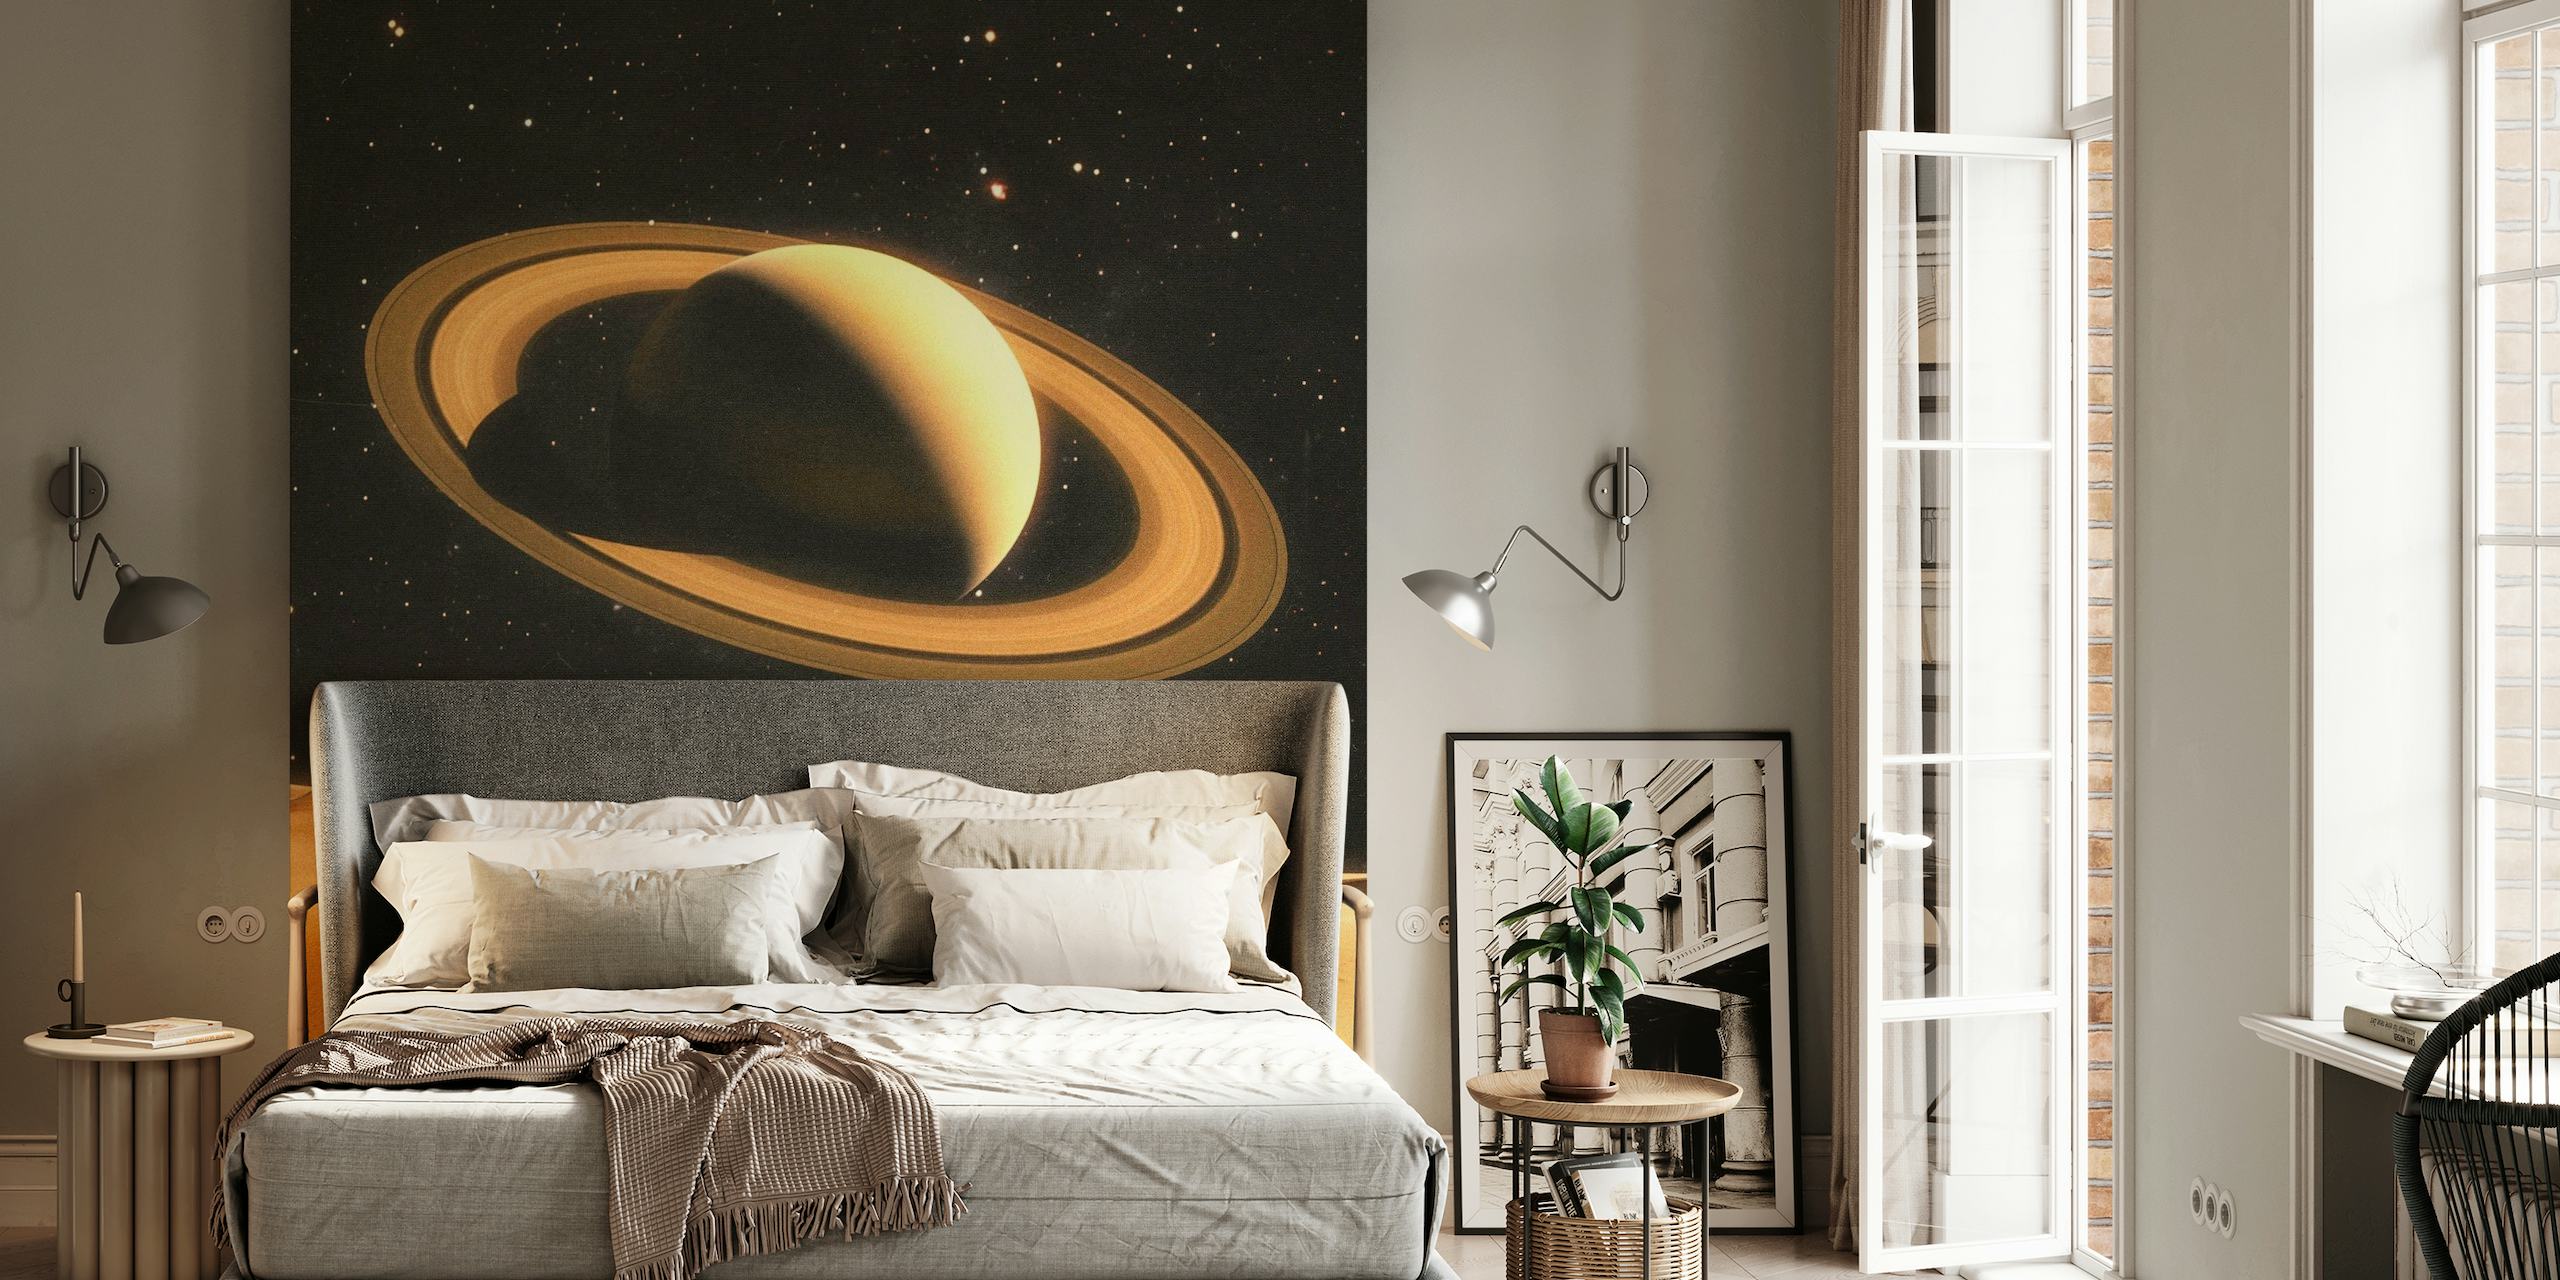 Mural de parede de duas pessoas em um planeta desértico com Saturno ao fundo